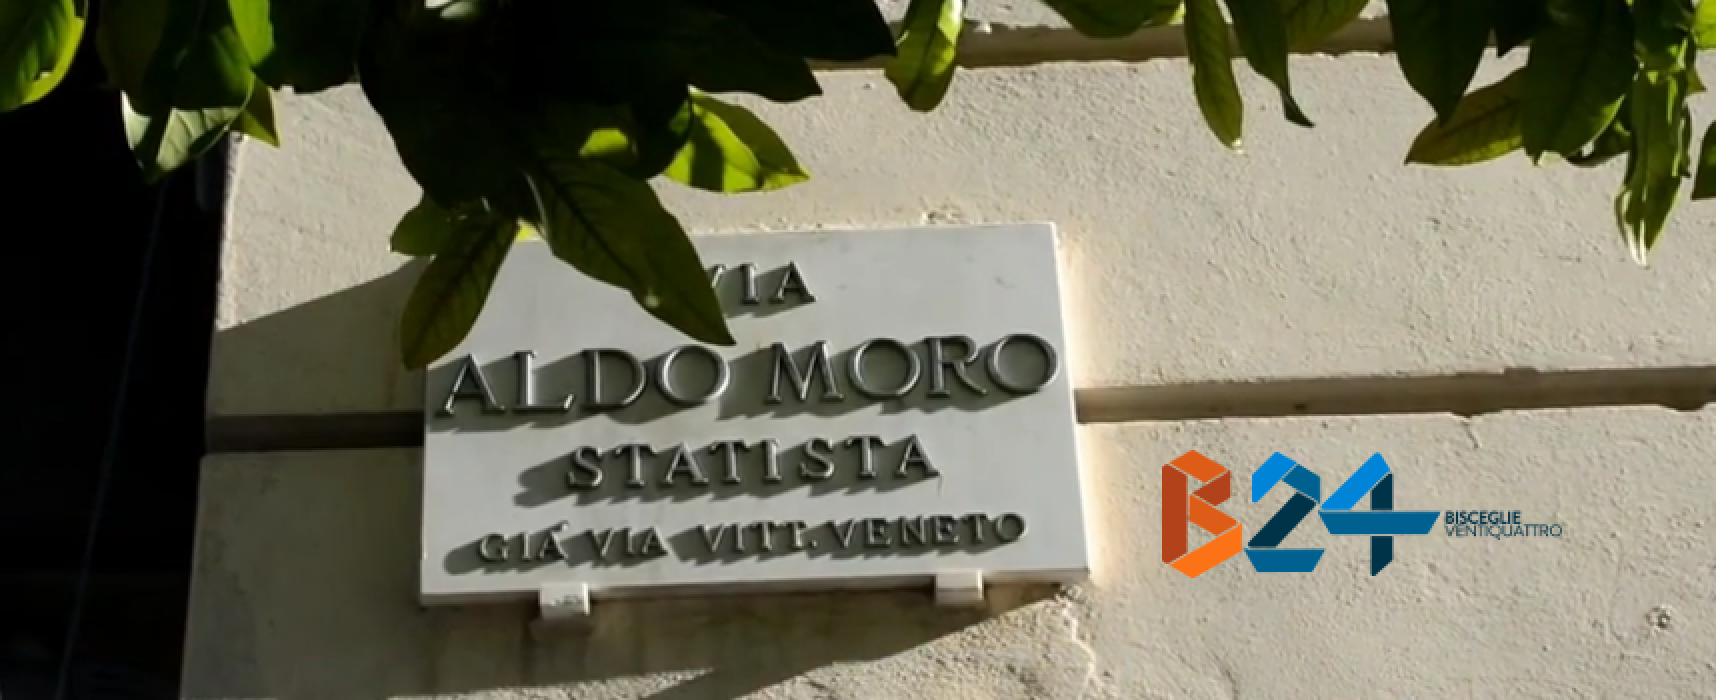 Pedonalizzazione di via Aldo Moro, l’opinione dei cittadini / VIDEO